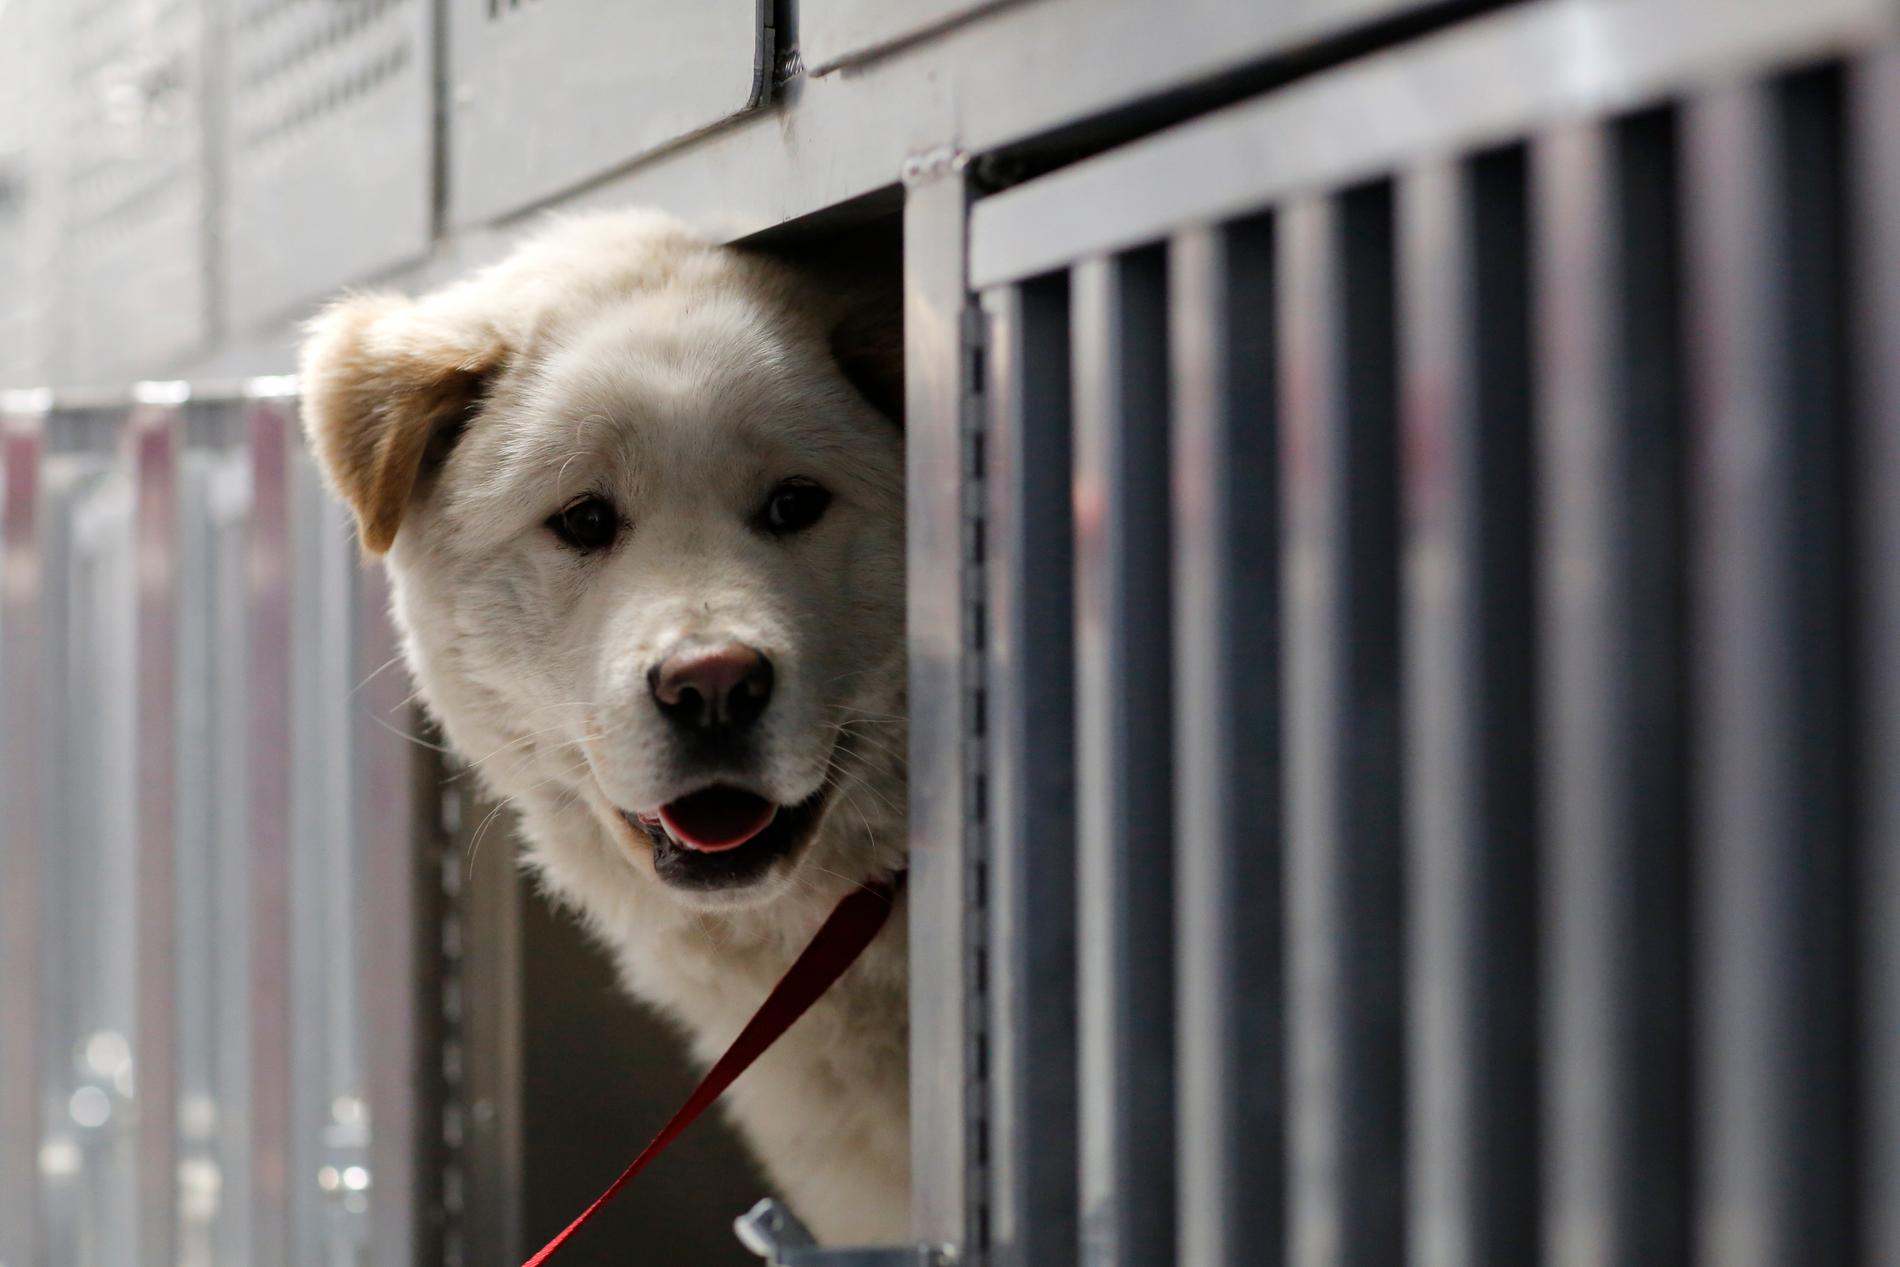 Omkring en miljon hundar dödas årligen i Sydkorea för att bli mat trots att fler och fler unga sydkoreaner tar avstånd från sedvänjan. Hunden på bilden räddades från en hunduppfödare 2017.